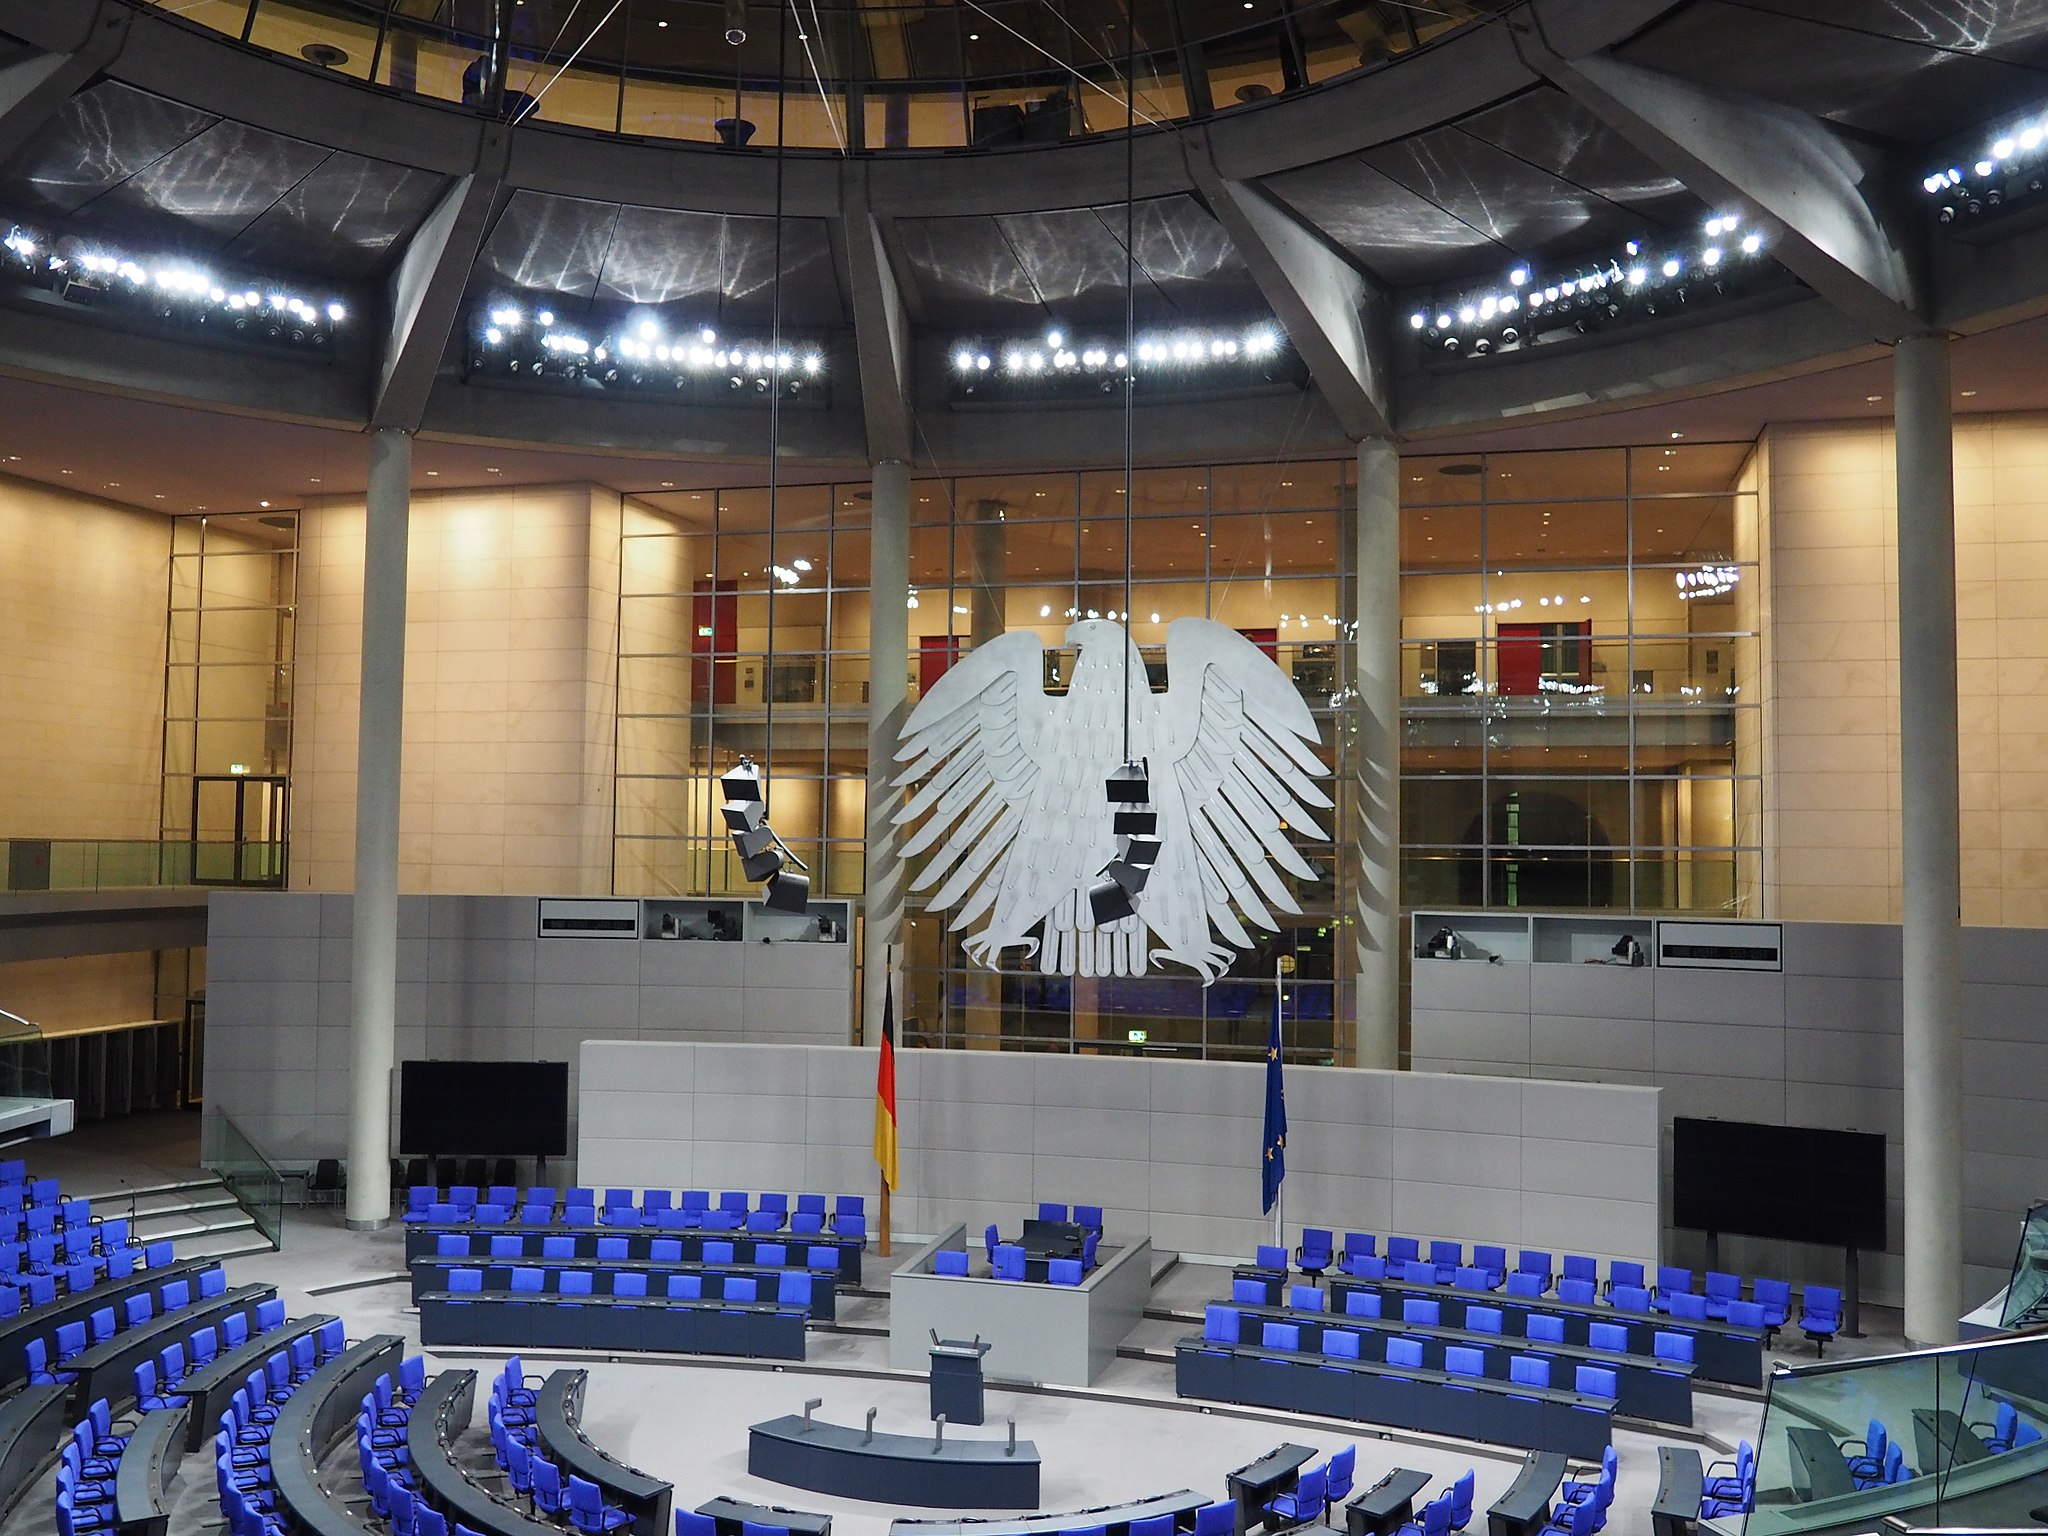 Bild: A. Delesse (Prométhée), Bundestag – Palais du Reichtstag, CC BY-SA 3.0, via Wikimedia Commons (Keine Änderungen vorgenommen)